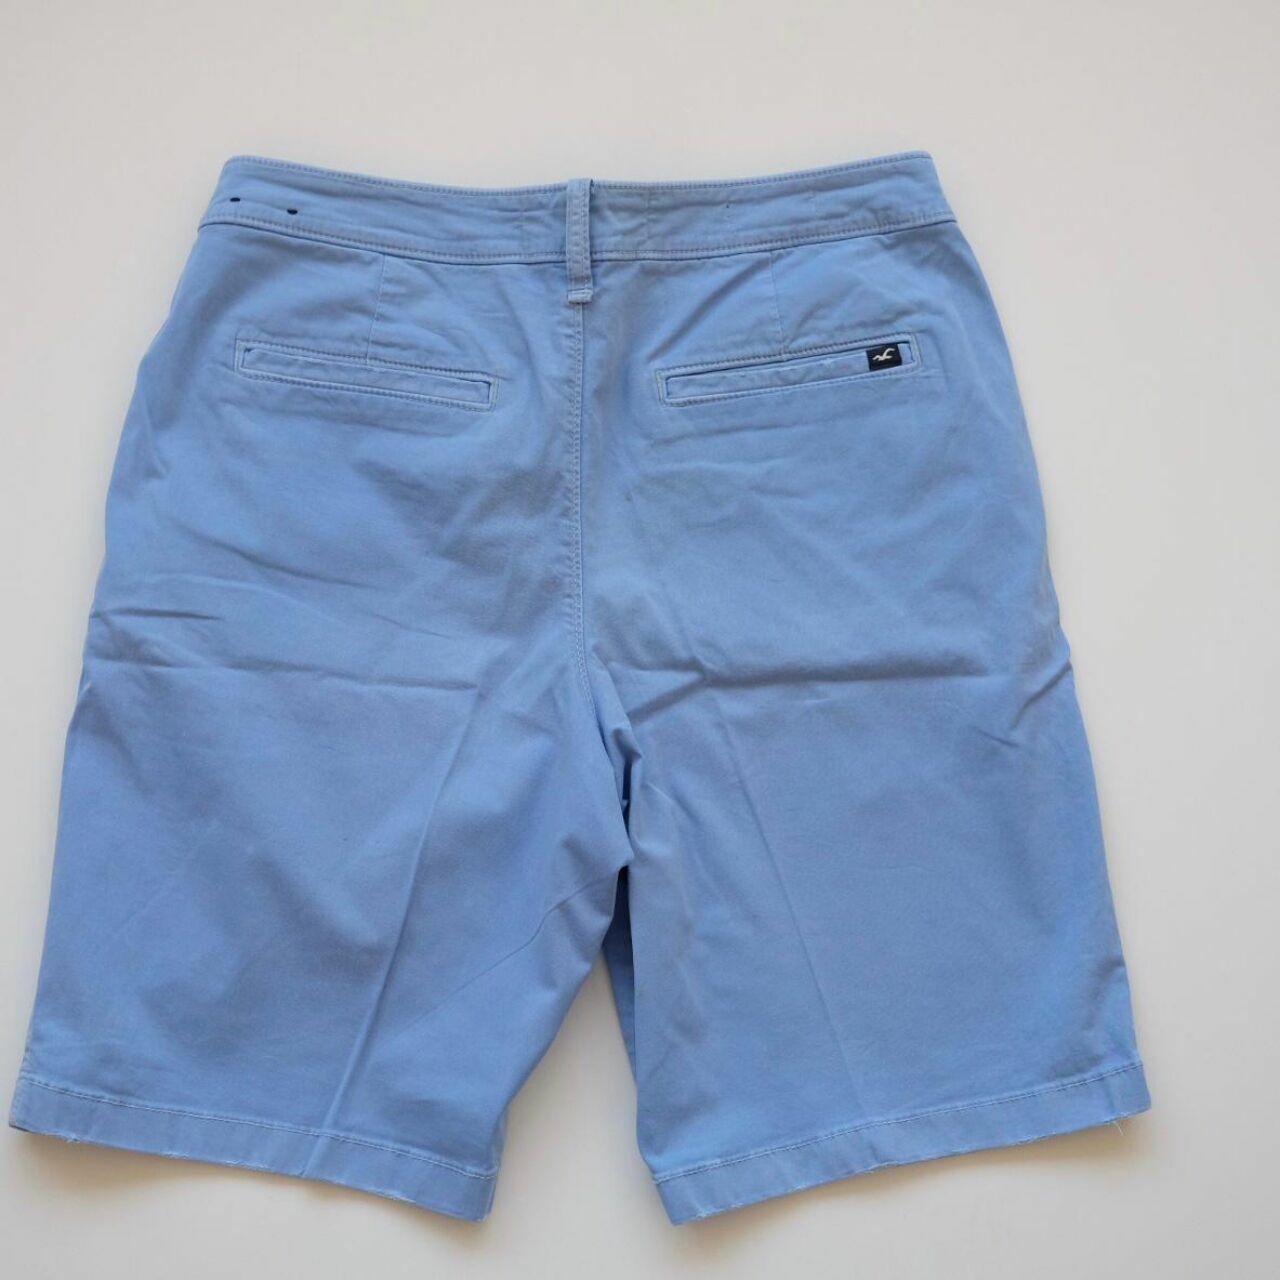 Hollister Light Blue Short Pants